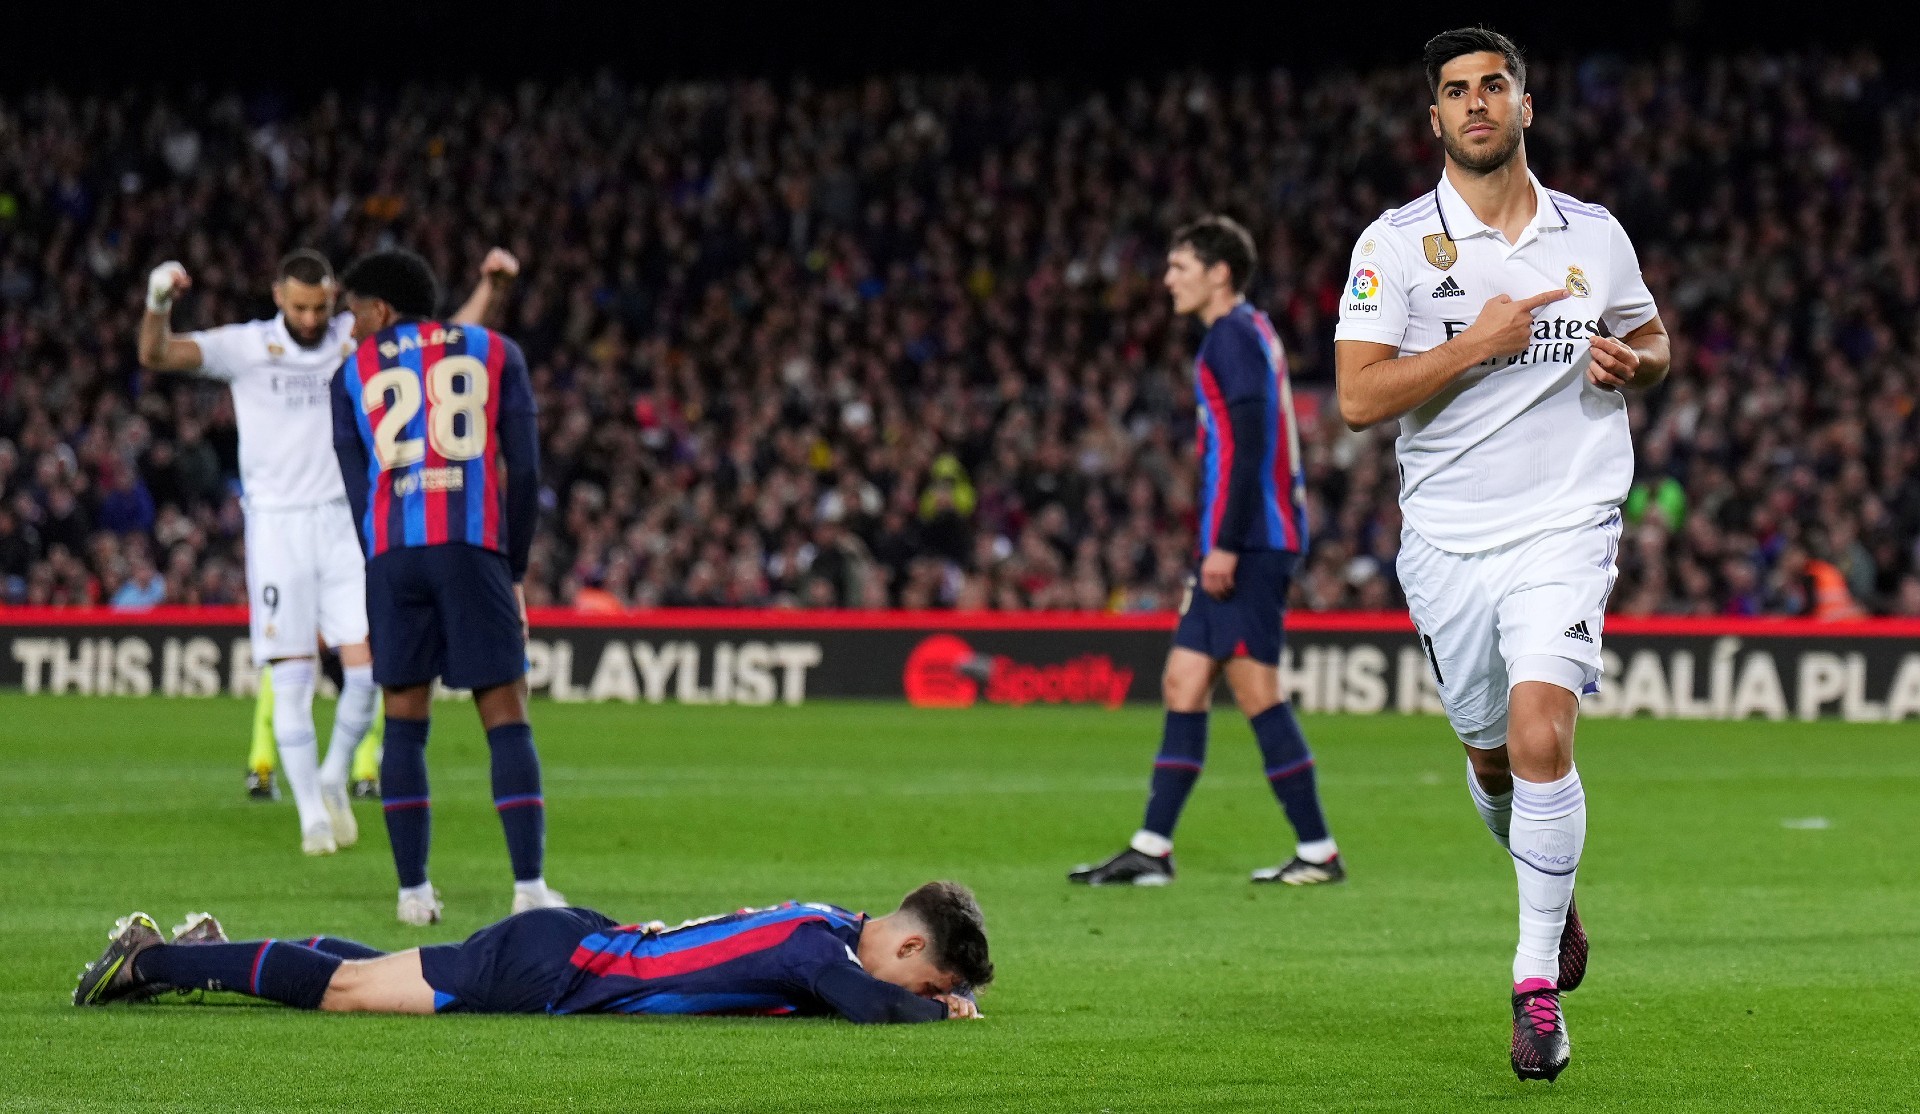 Asensio se señala el escudo tras marcar en el Camp Nou, gol que fue anulado, siendo el inicio de la polémica.